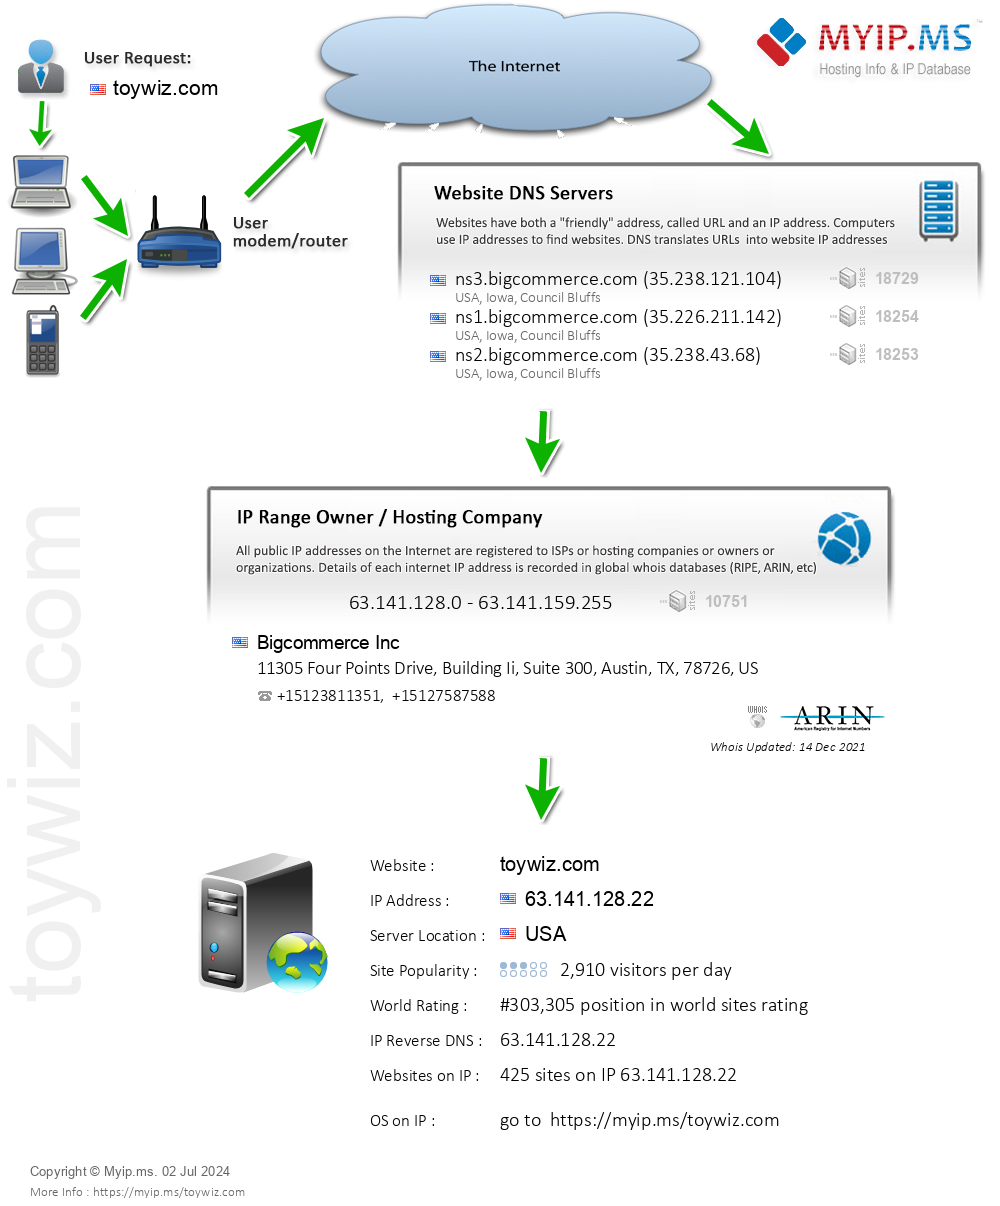 Toywiz.com - Website Hosting Visual IP Diagram